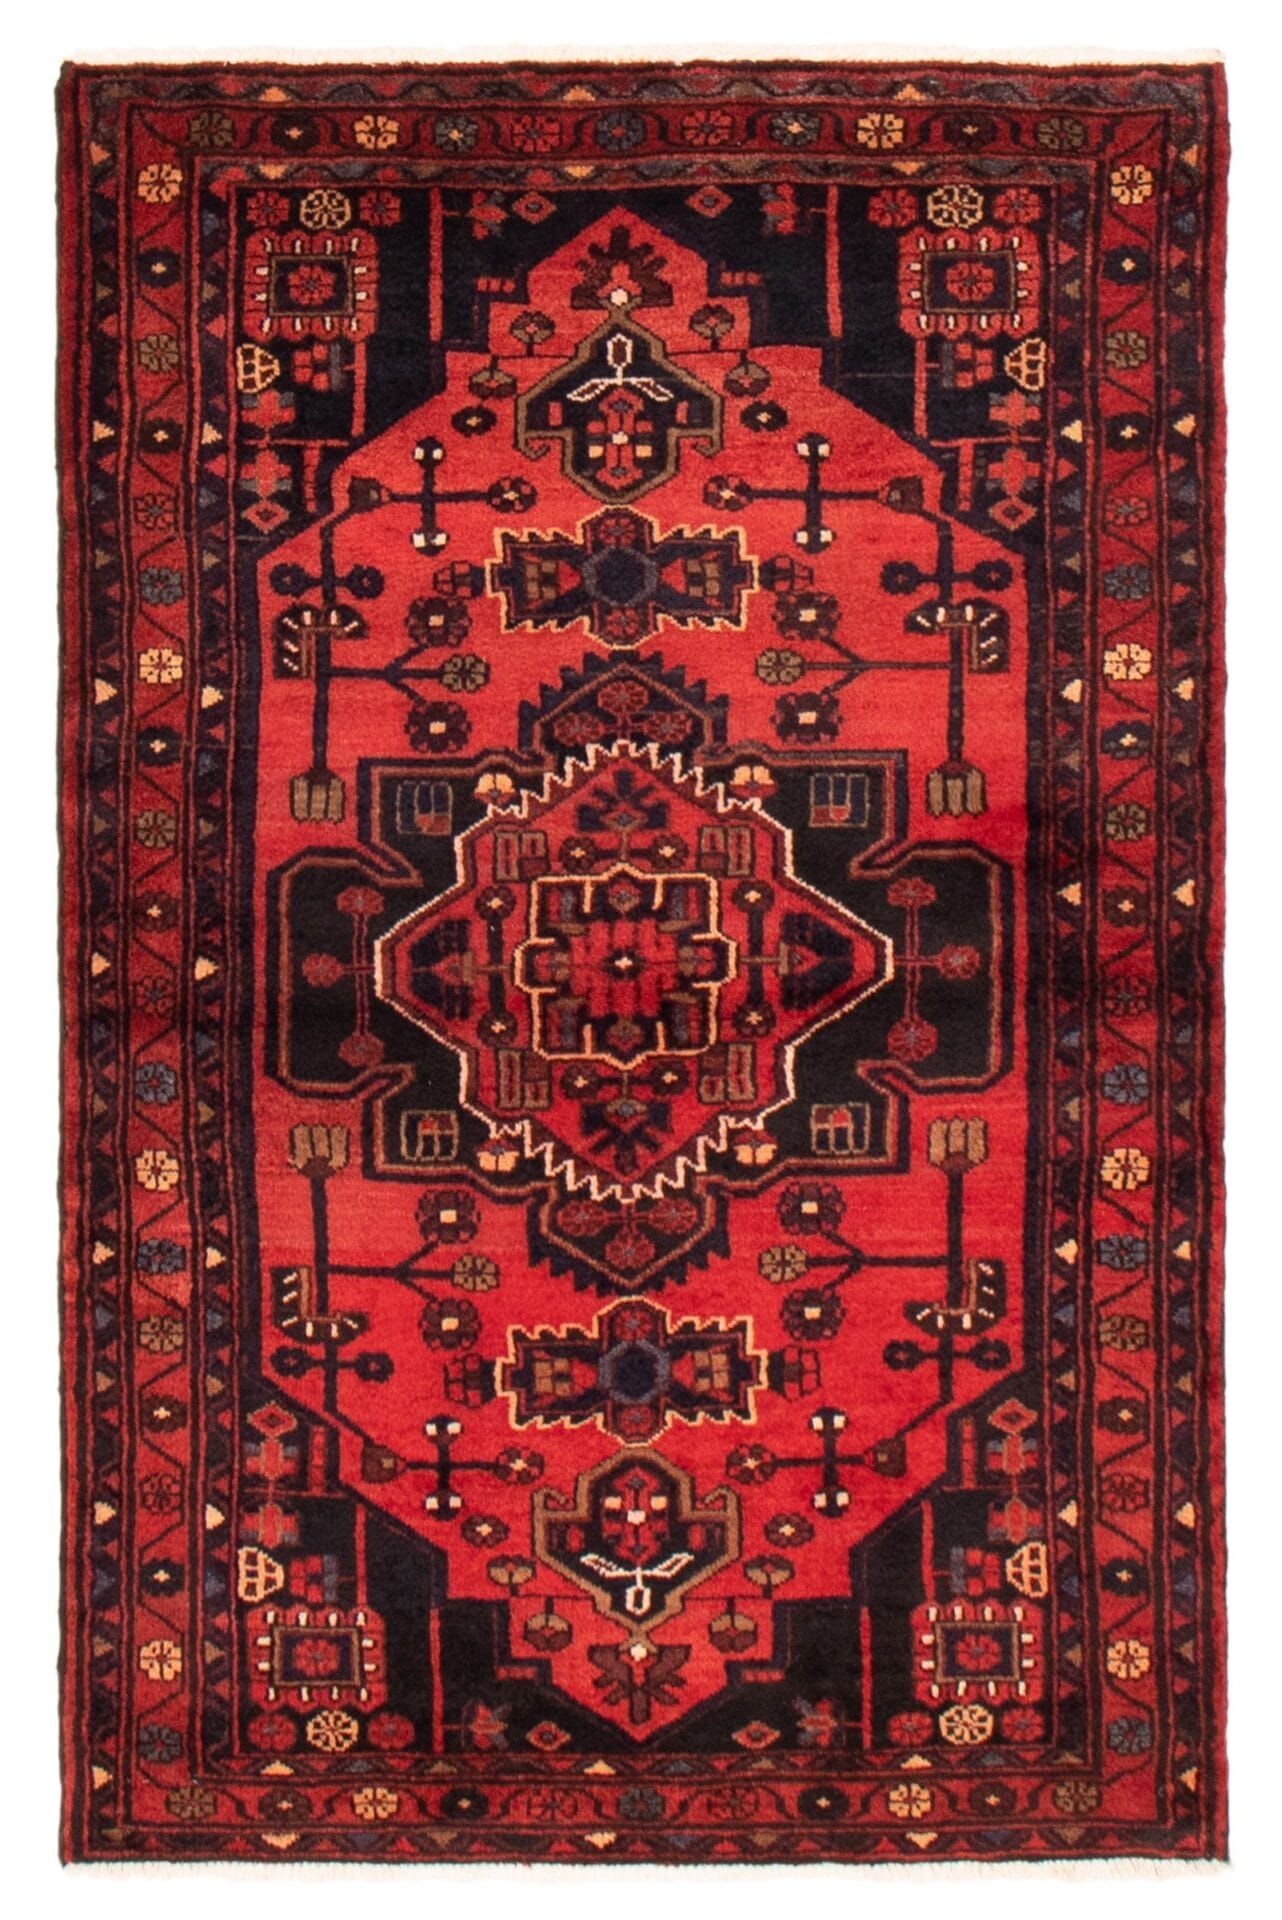 Een vloerkleed met een ingewikkeld ontwerp in rood en zwart.